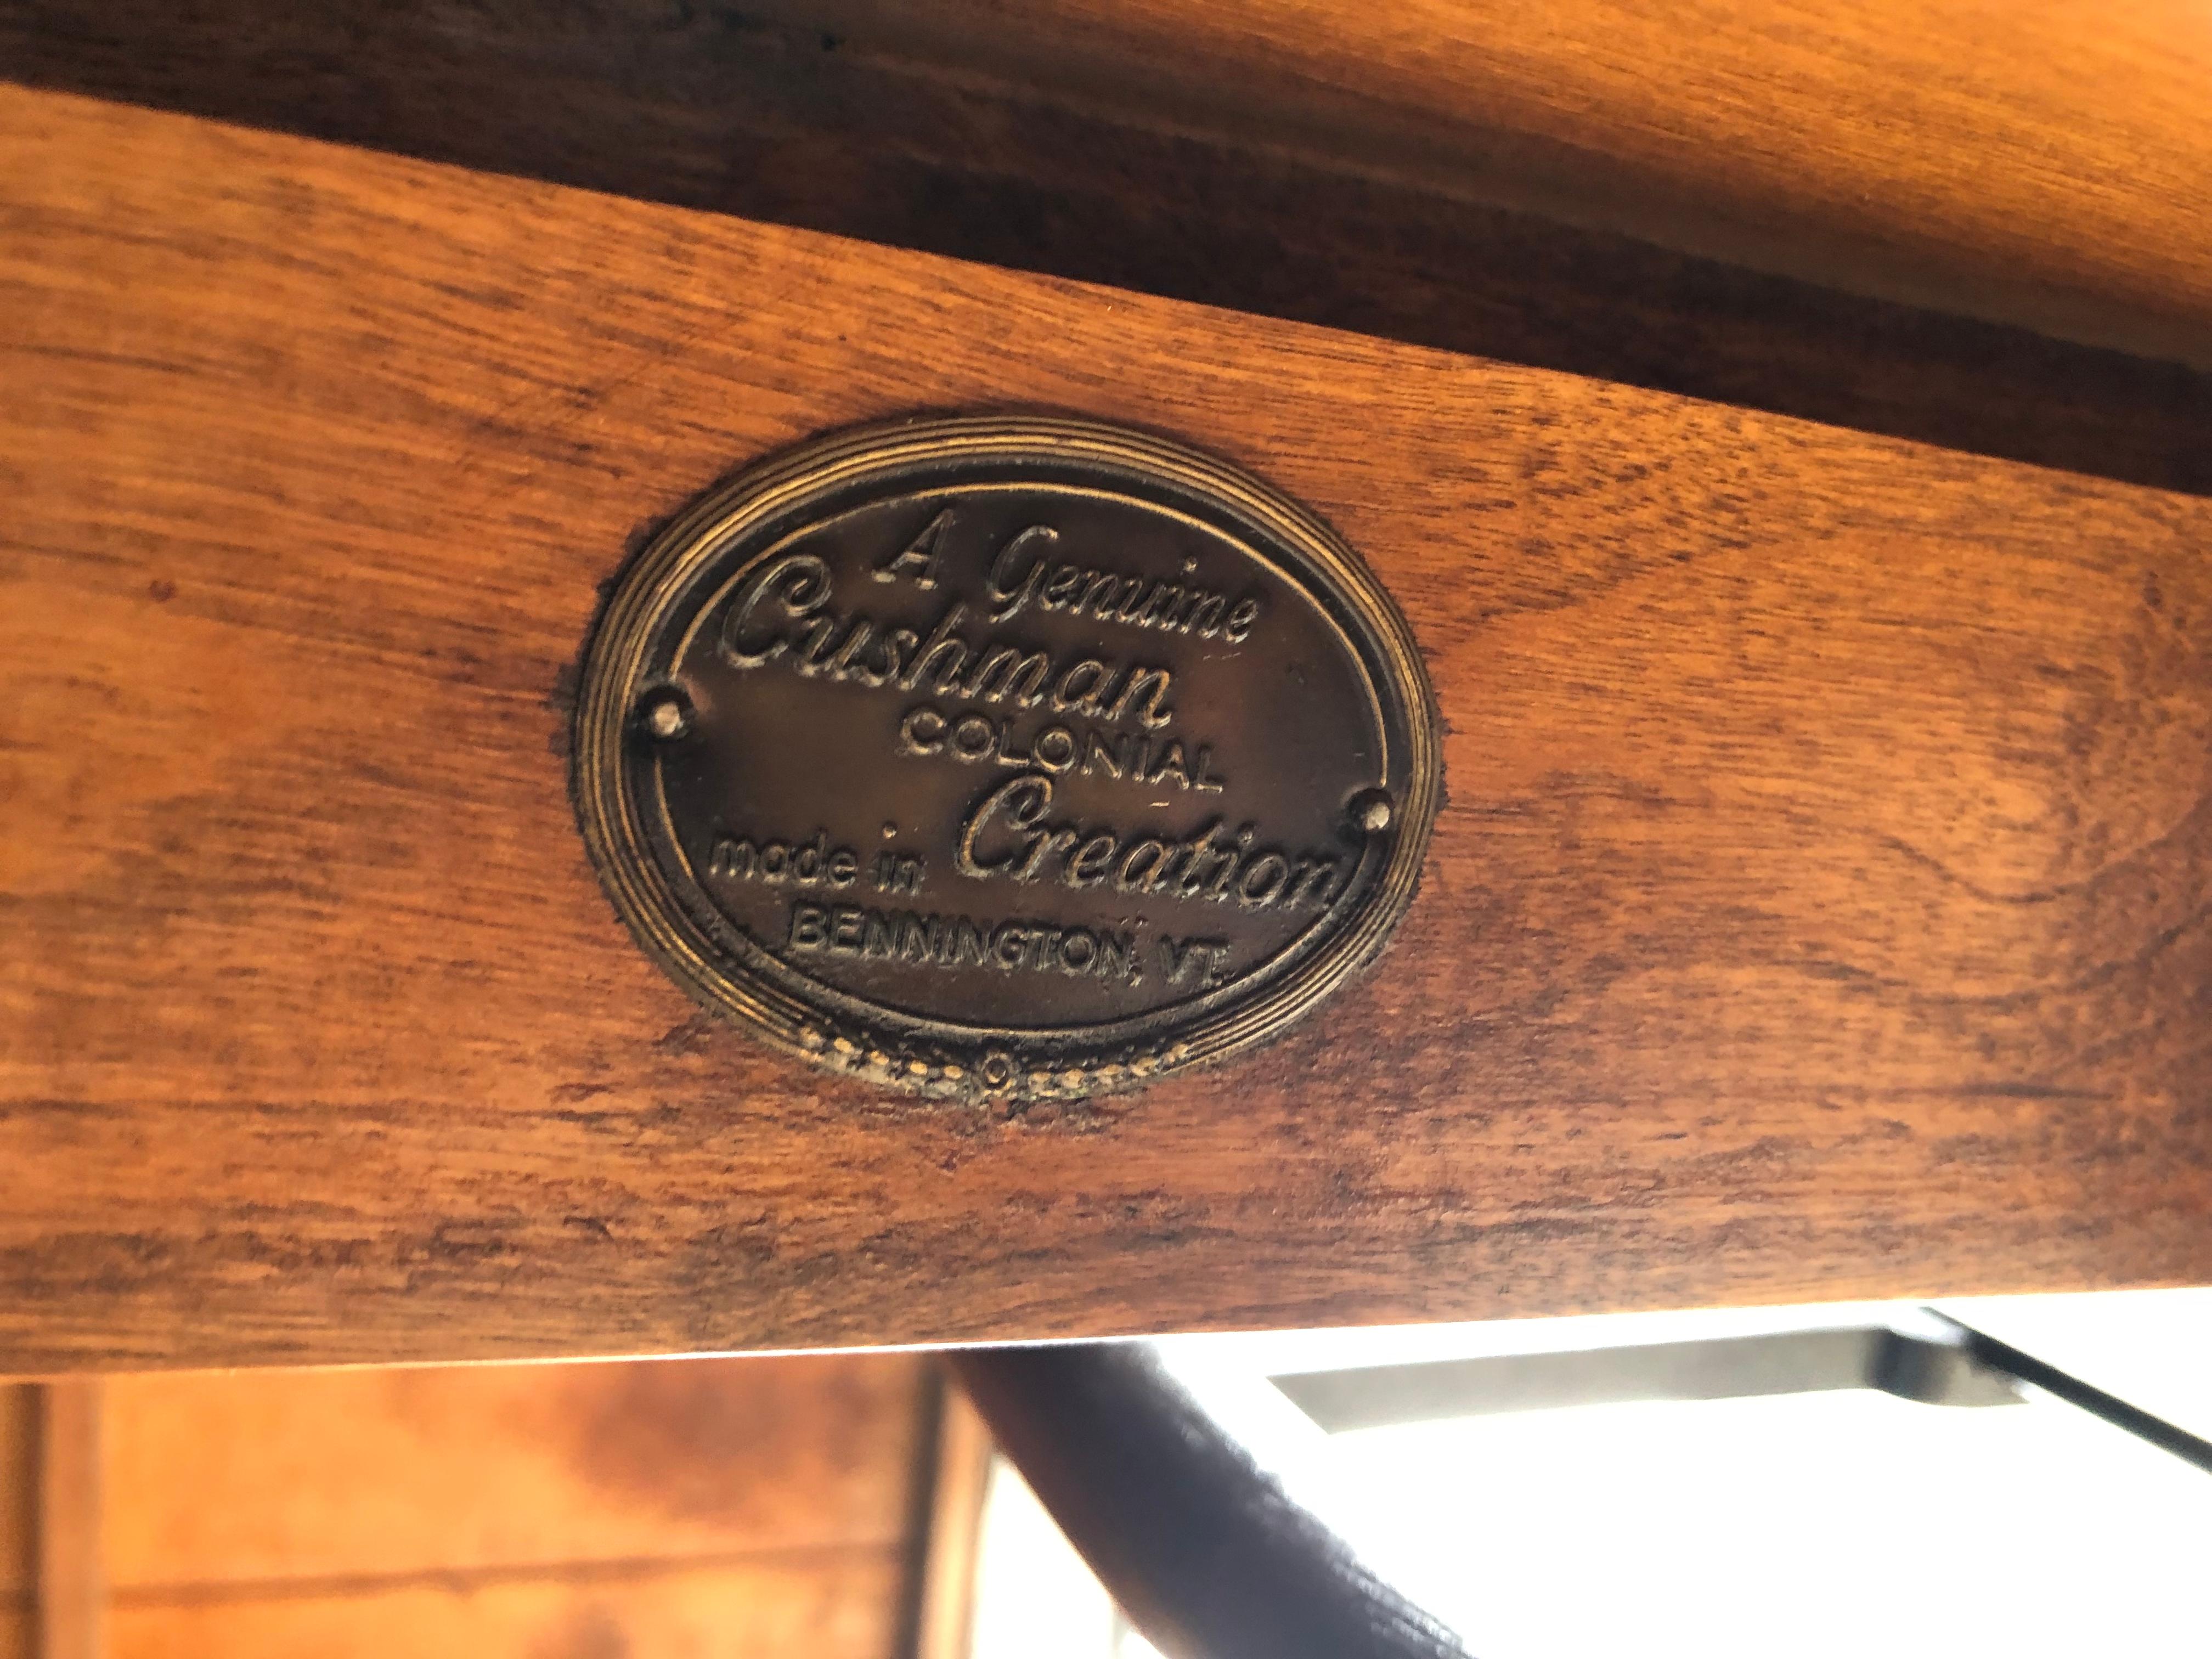 Colonial américain Table vintage Cushman Colonial Creations en érable massif Sawbuck avec tréteau en vente